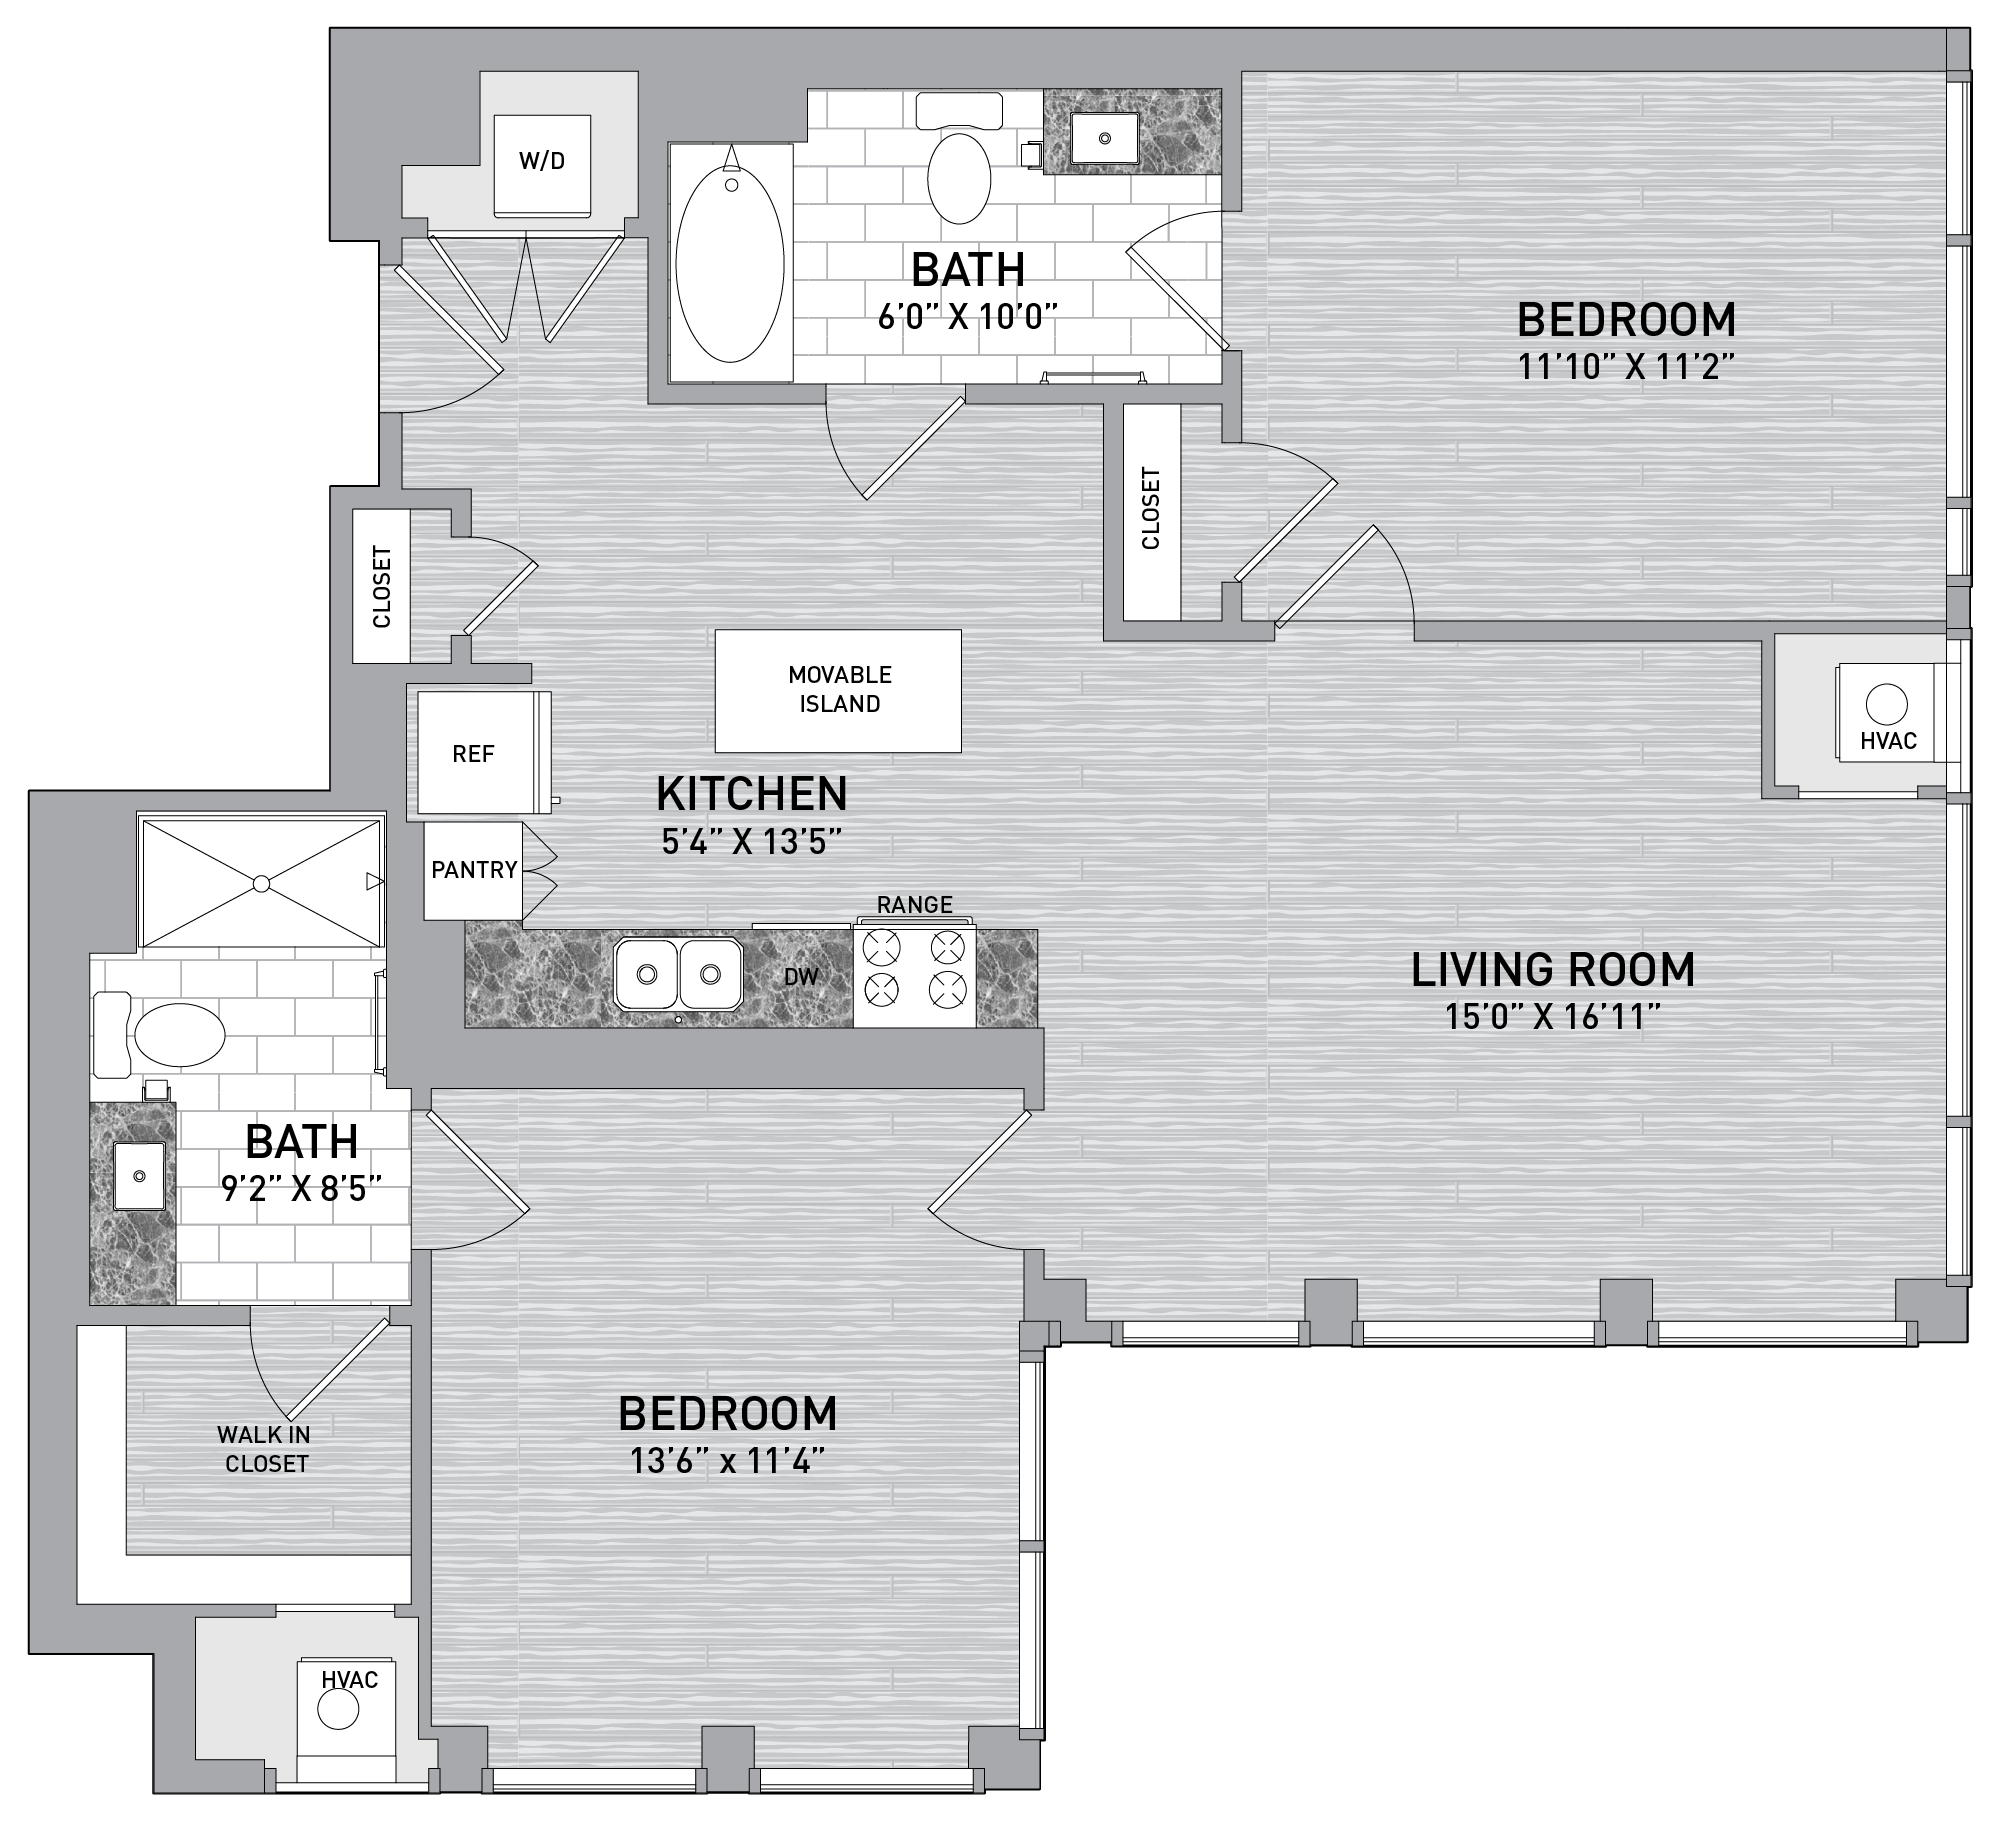 floorplan image of unit id 0401